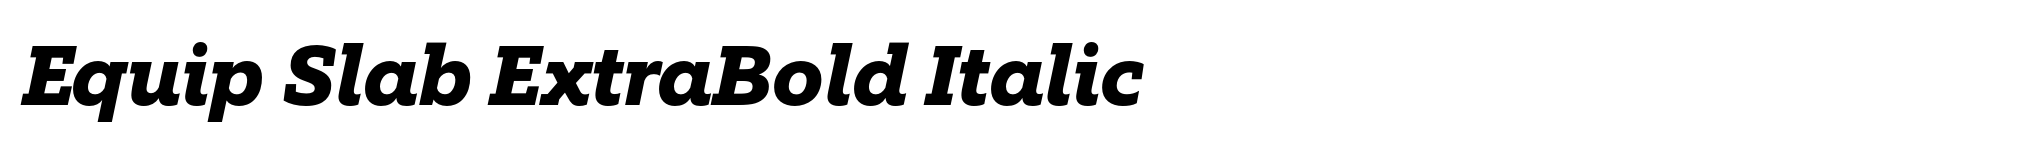 Equip Slab ExtraBold Italic image